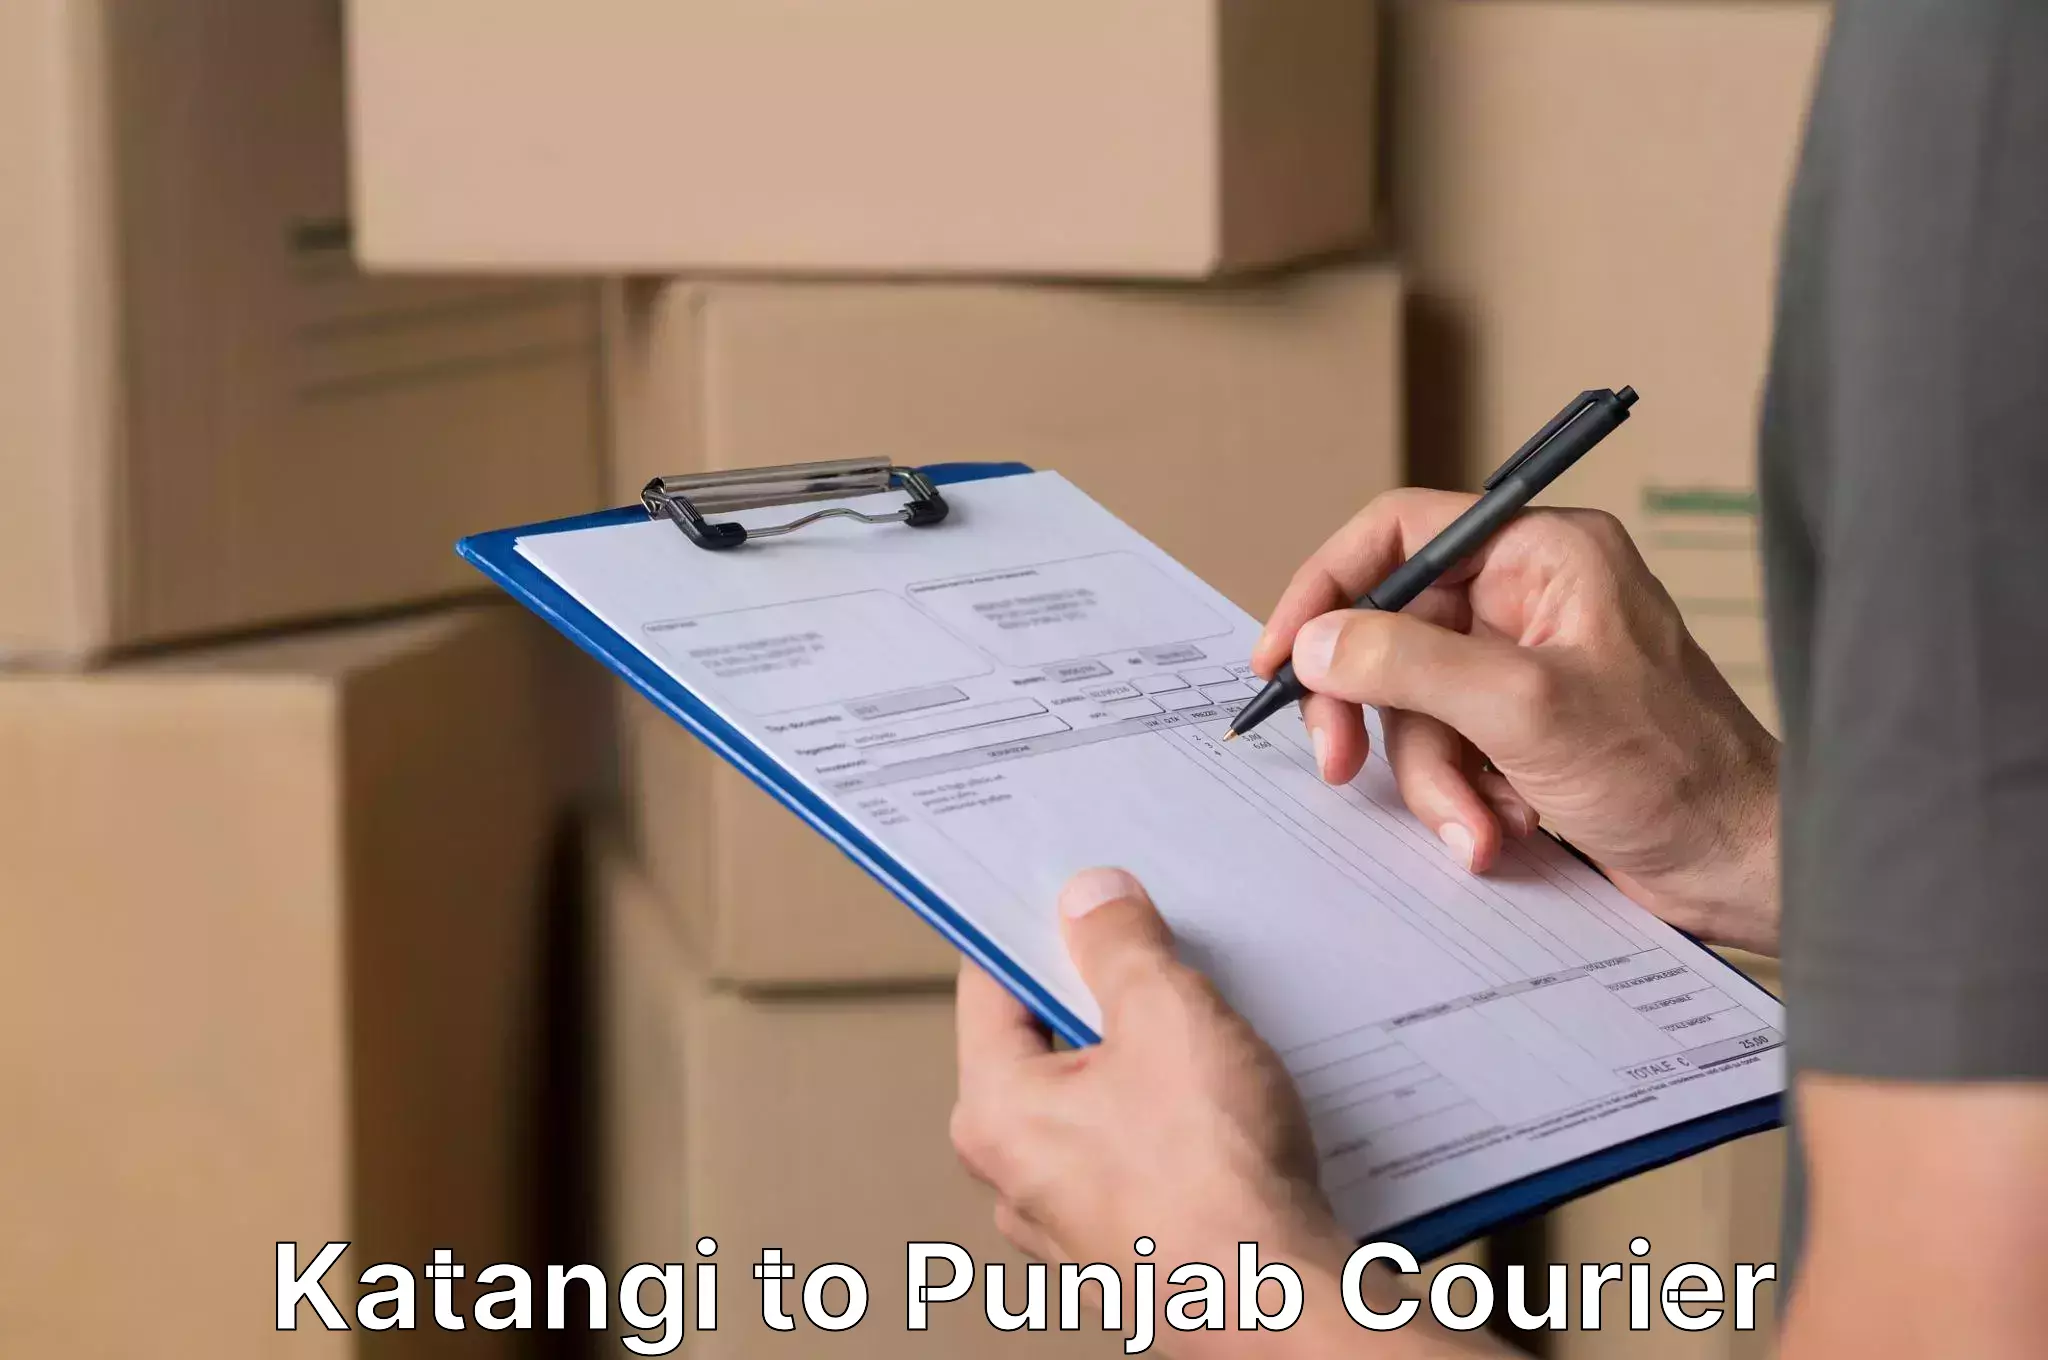 Efficient furniture movers in Katangi to Punjab